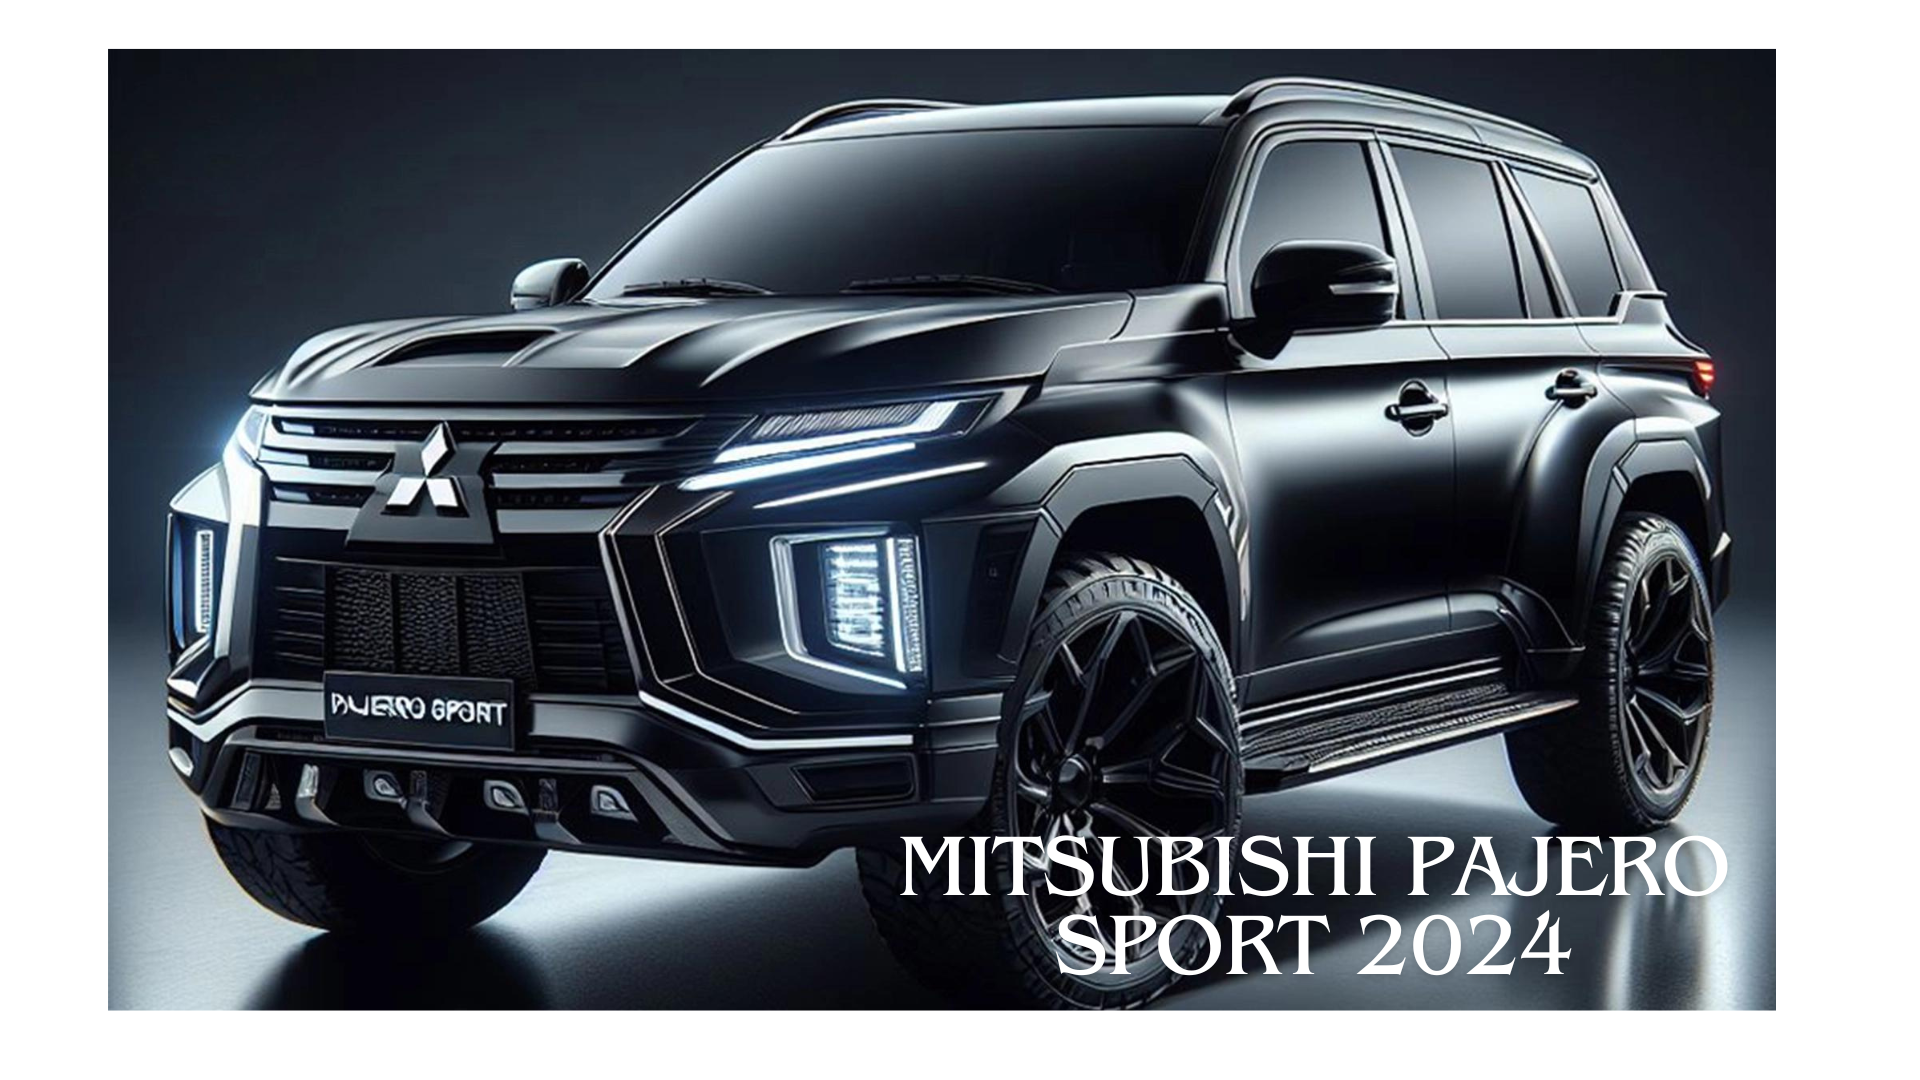 Mitsubishi Pajero Sport 2024, SUV Kelas Atas yang Punya Spesifikasi Gahar dan Gagah